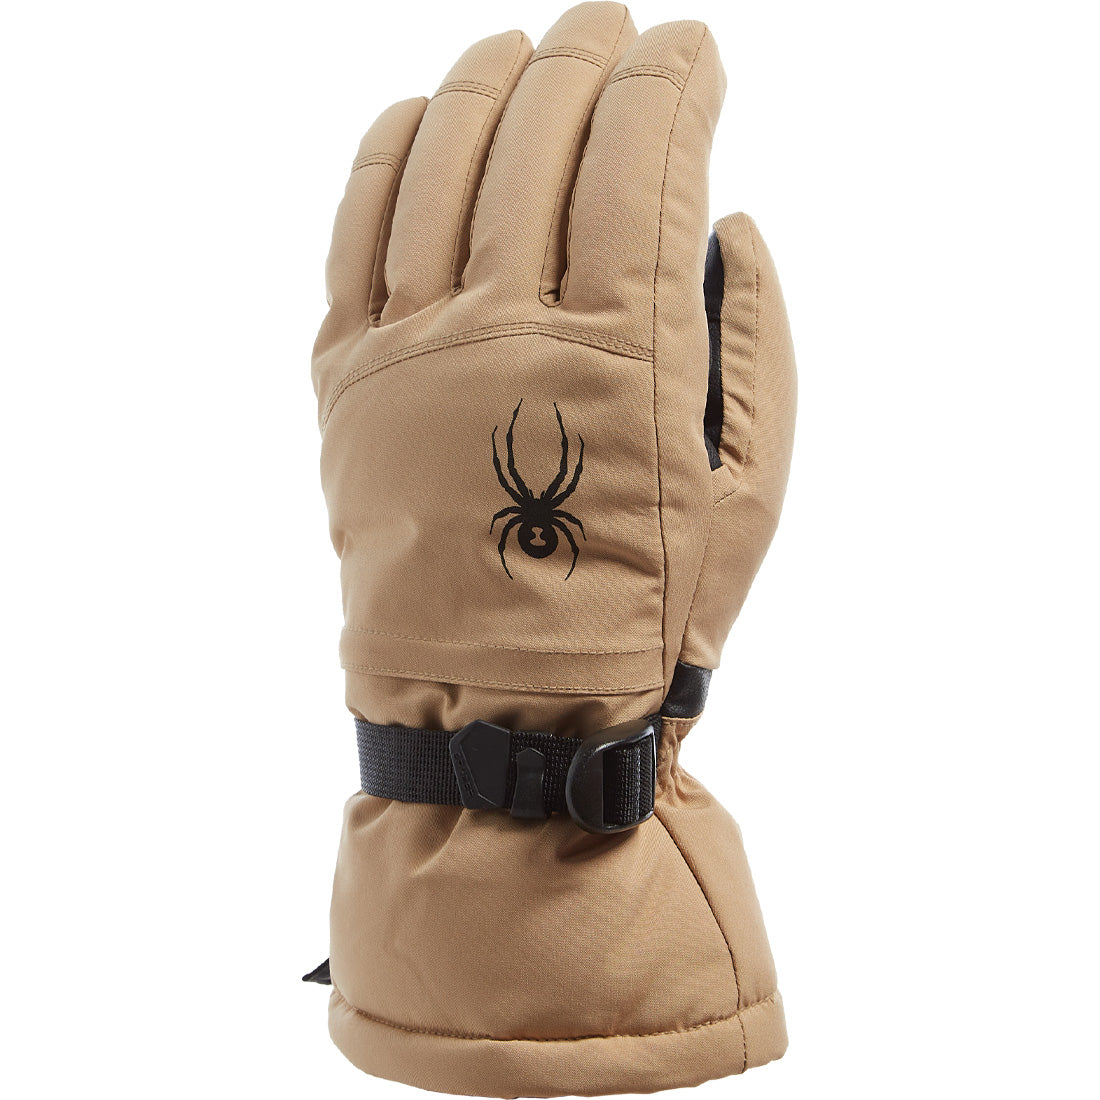 Spyder Traverse Glove - Men's